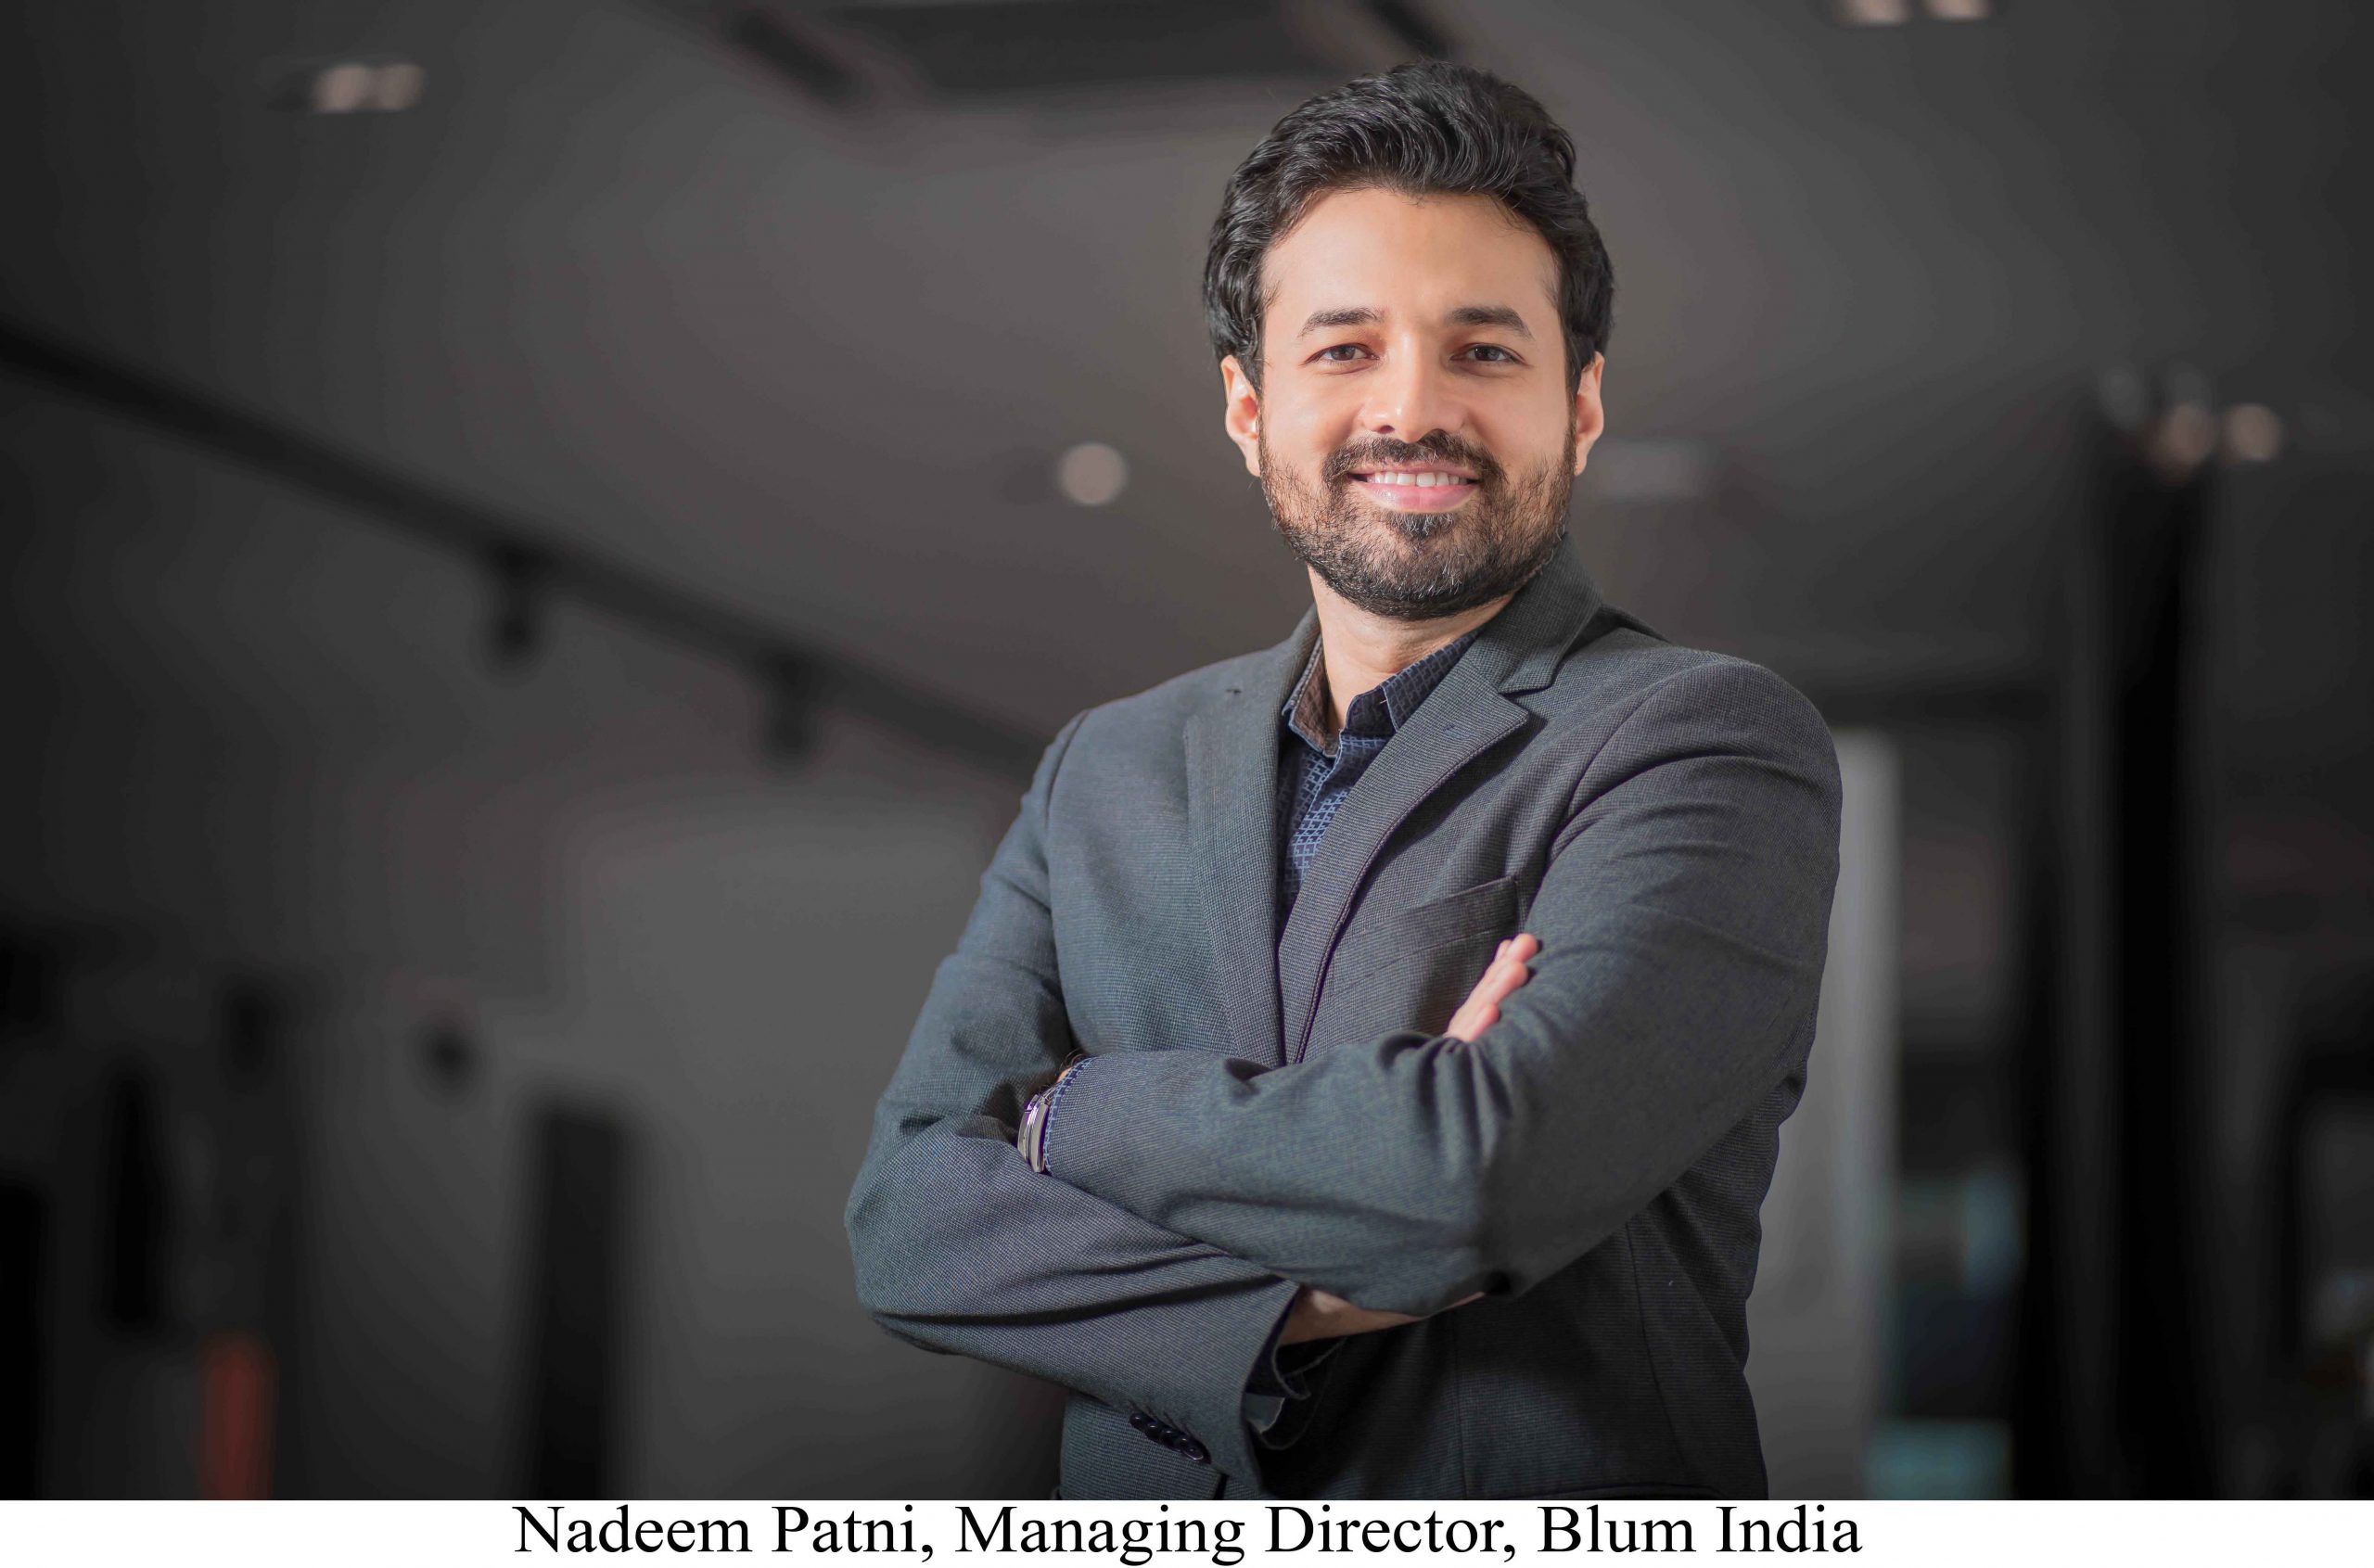 ब्लुम ने अपनी भारतीय सहायक कंपनी विकसित की